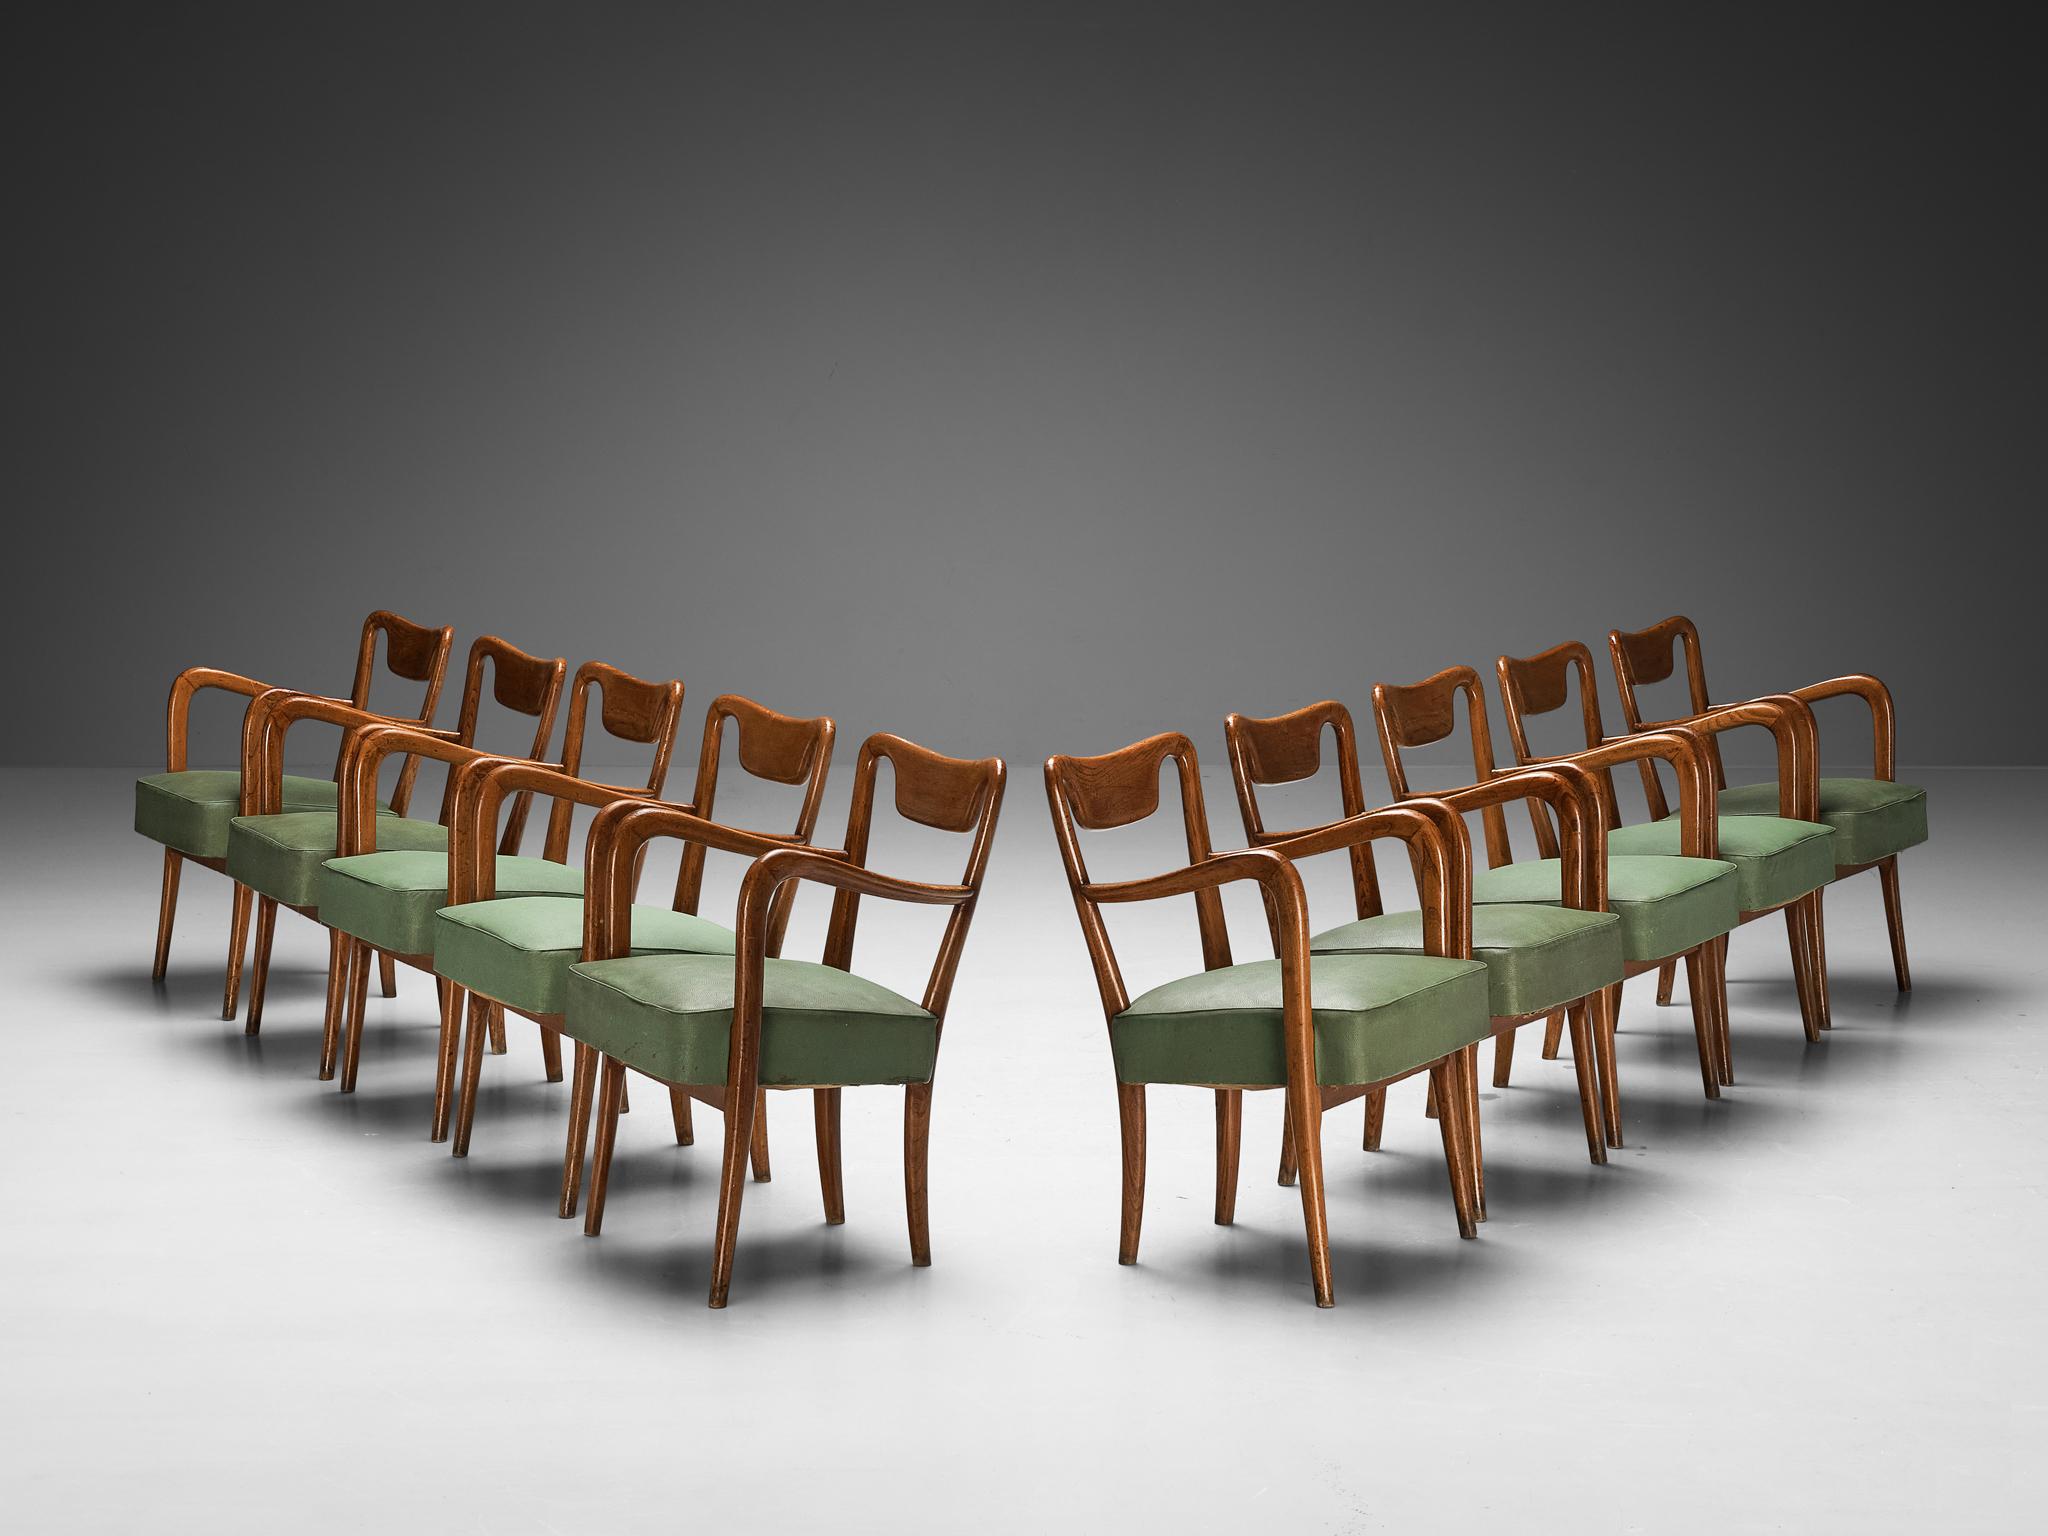 Ensemble de dix chaises de salle à manger, teck, faux cuir, Italie, années 1940

Un splendide ensemble de chaises de salle à manger provenant d'Italie dans les années 1940. Admiré pour sa forme intrinsèque et sa fabrication magistrale, ce design